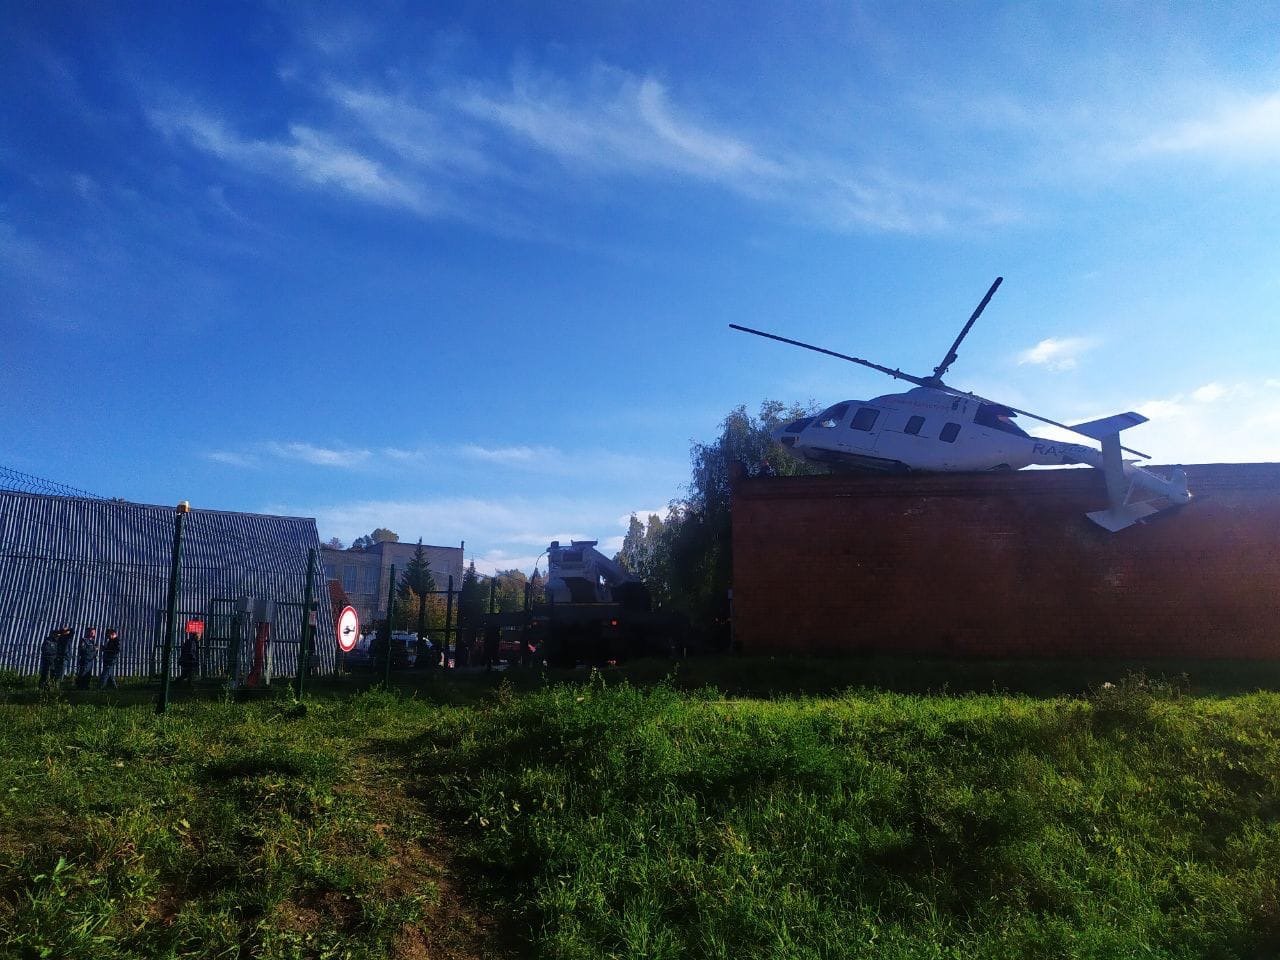 

В Ижевске возбудили уголовное дело после аварийной посадки вертолета санавиации

